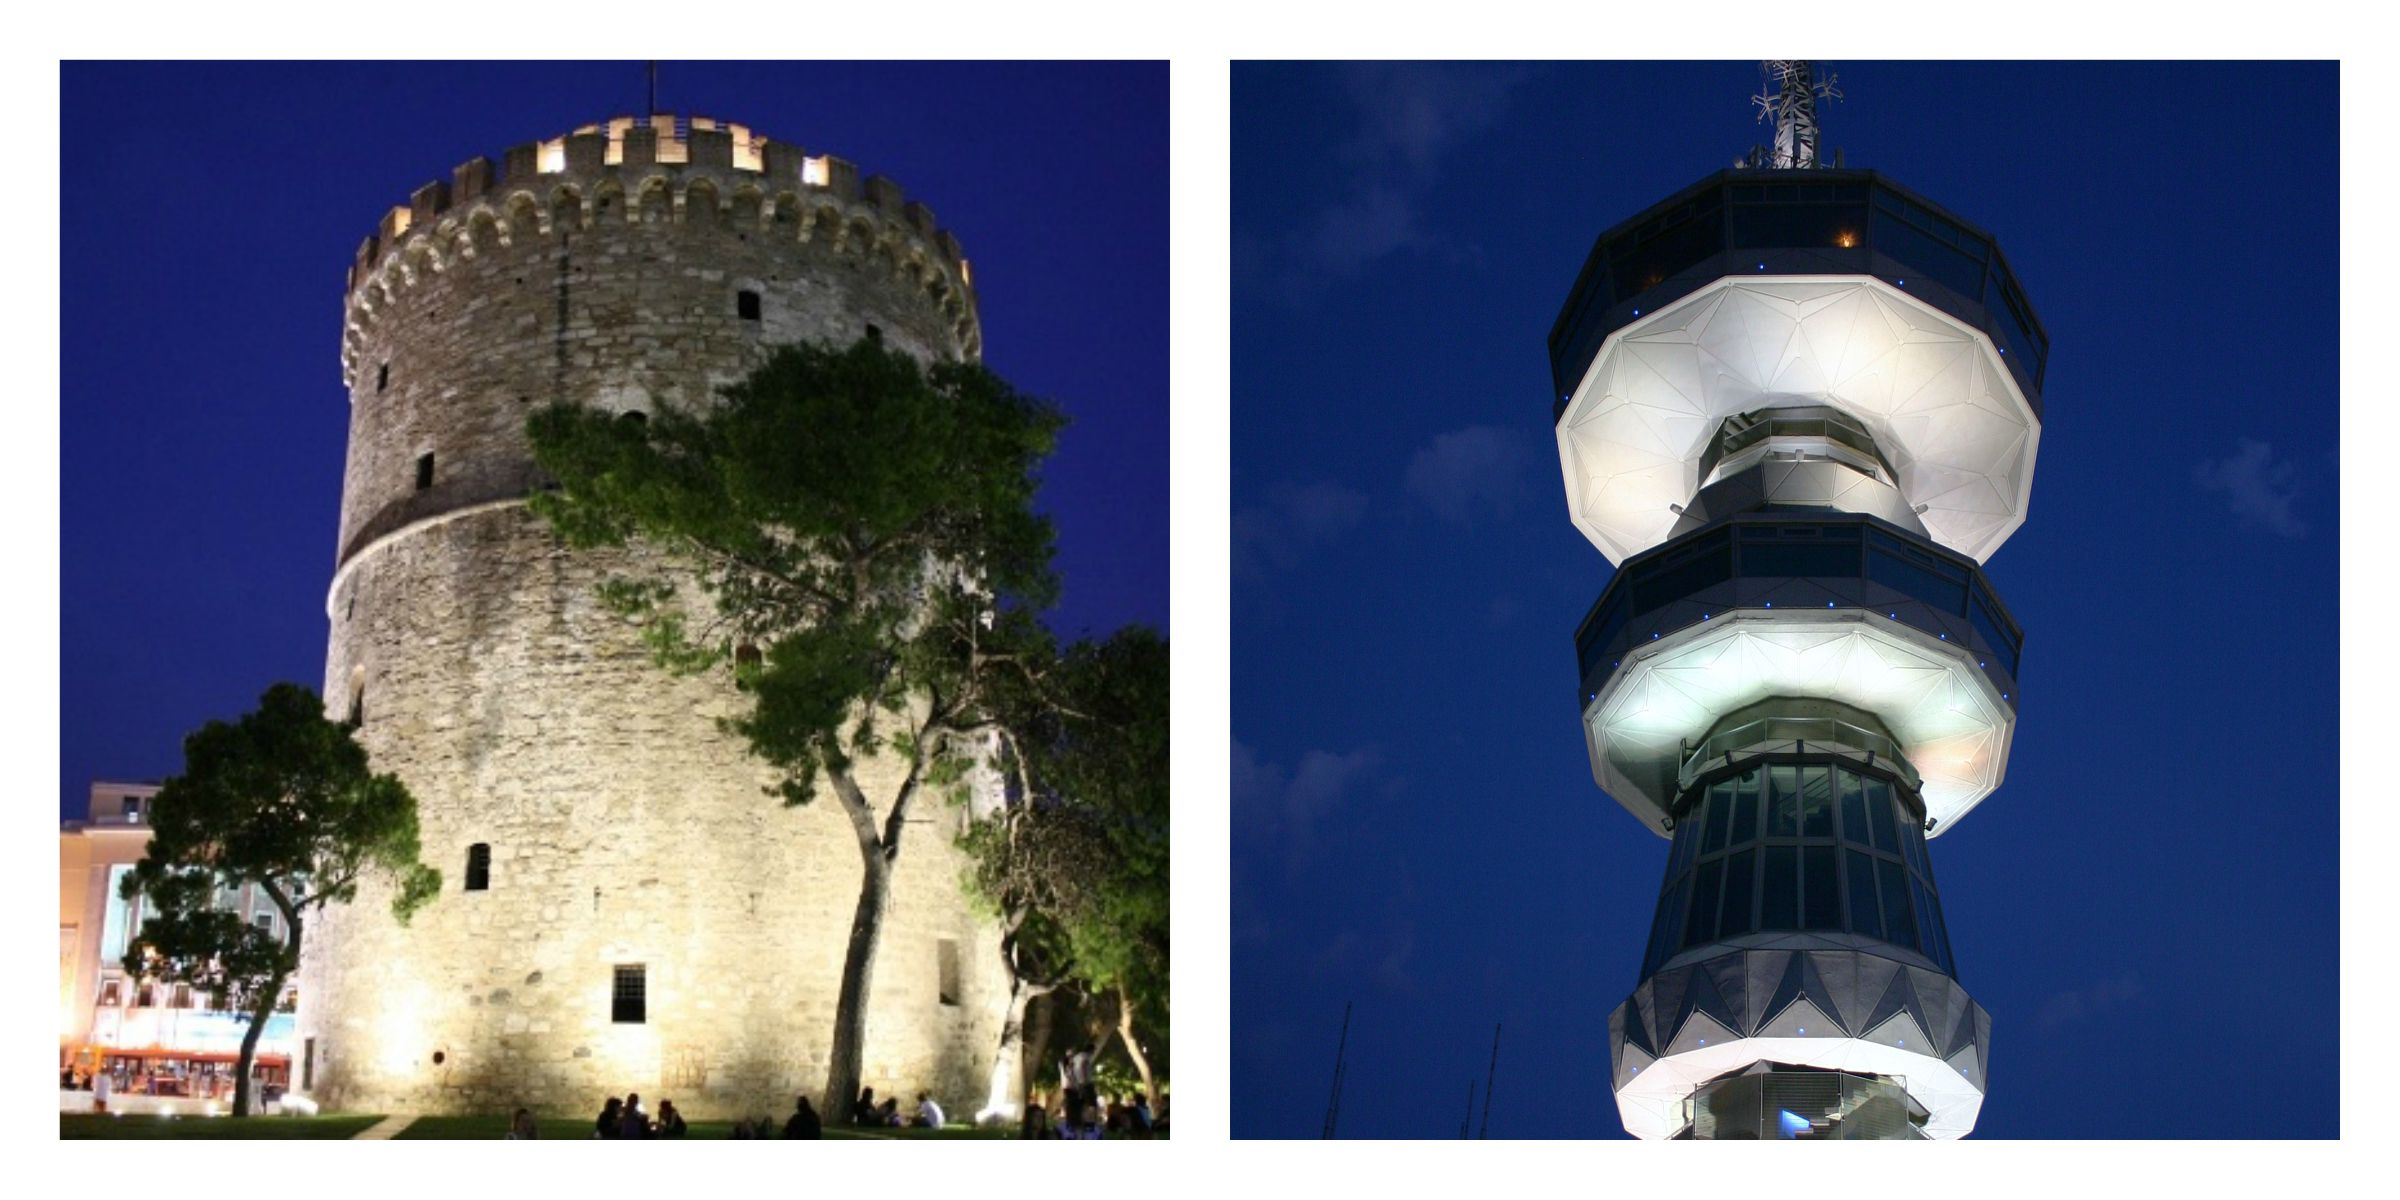 ΜΟΥΡΑΤΙΔΟΥ ΕΥΘΥΜΙΑ Ένα από τα σημαντικότερα αξιοθέατα όπου αξίζει κανείς να επισκεφτεί είναι φυσικά ο Λευκός Πύργος.